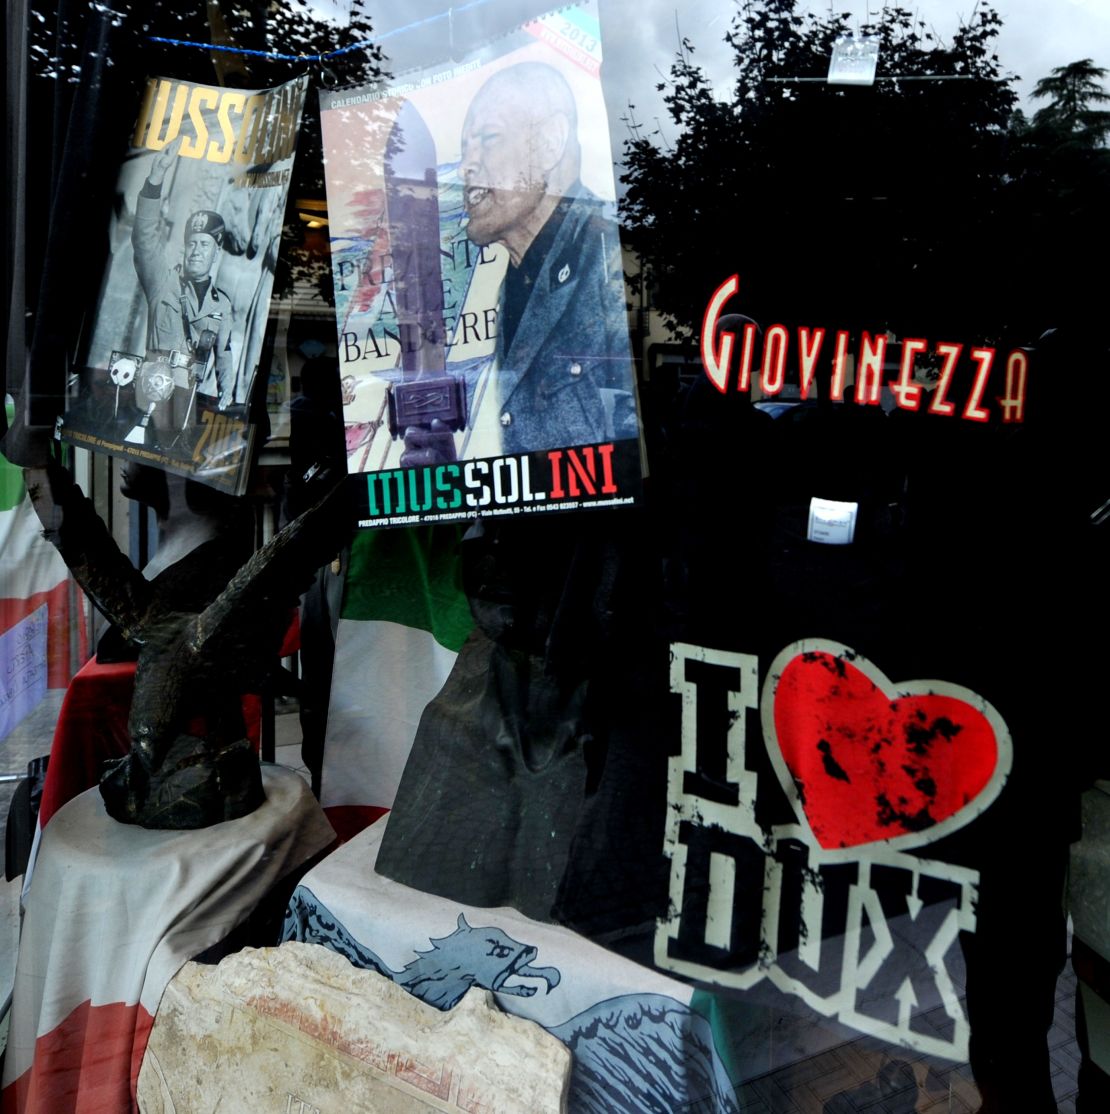 Souvenir shops in Predappio sell Mussolini and fascist souvenirs.